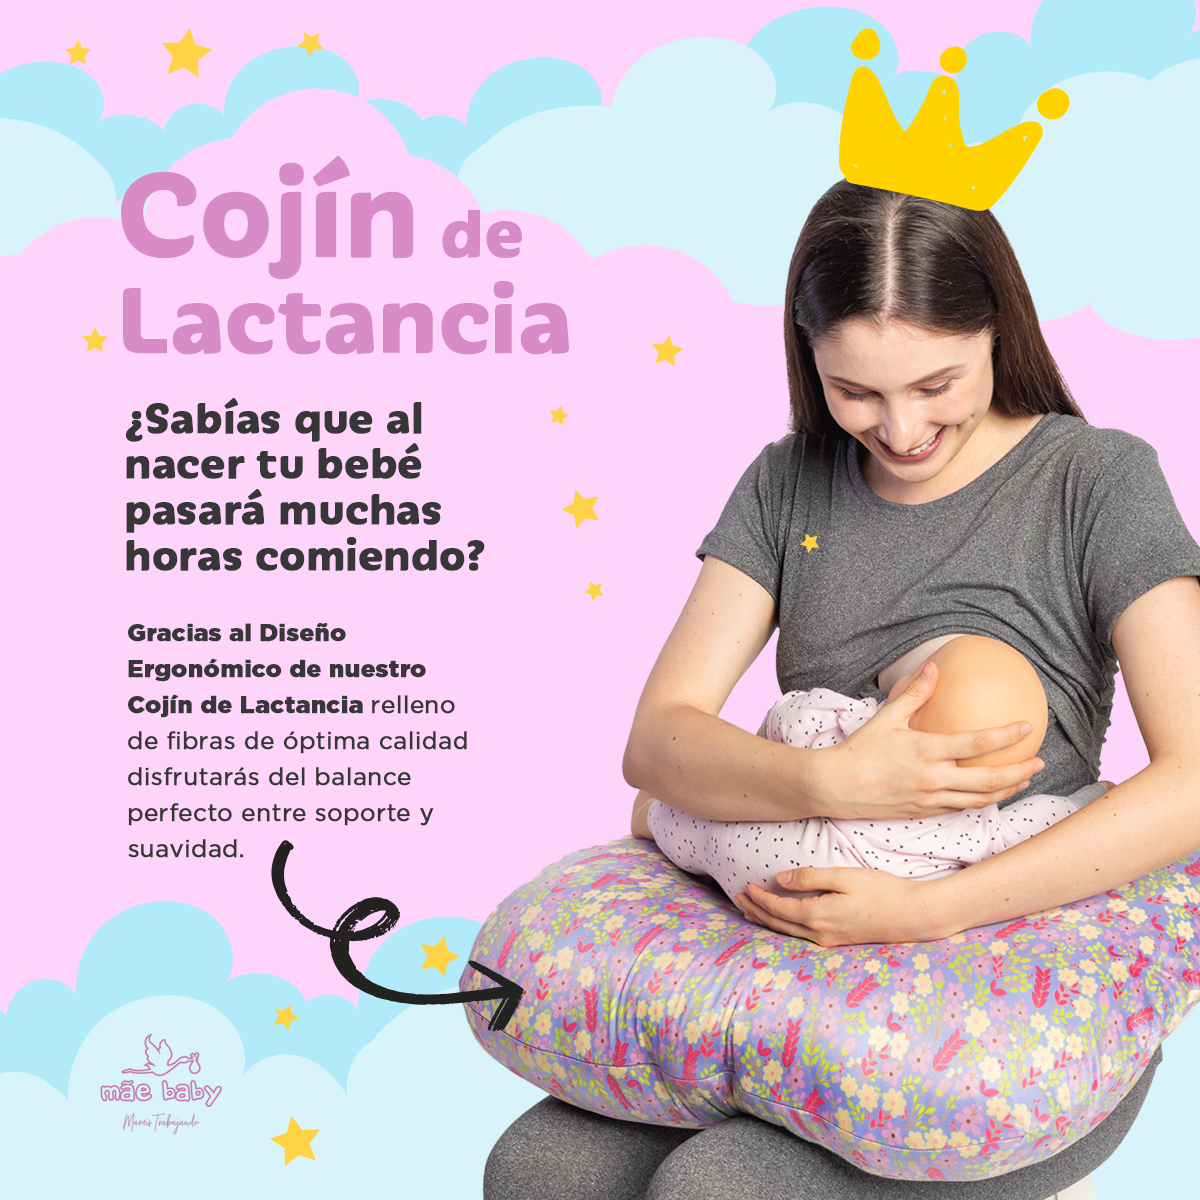 Almohada Cojín Lactancia para Amamantar Isabella Envío Gratis – mãe baby